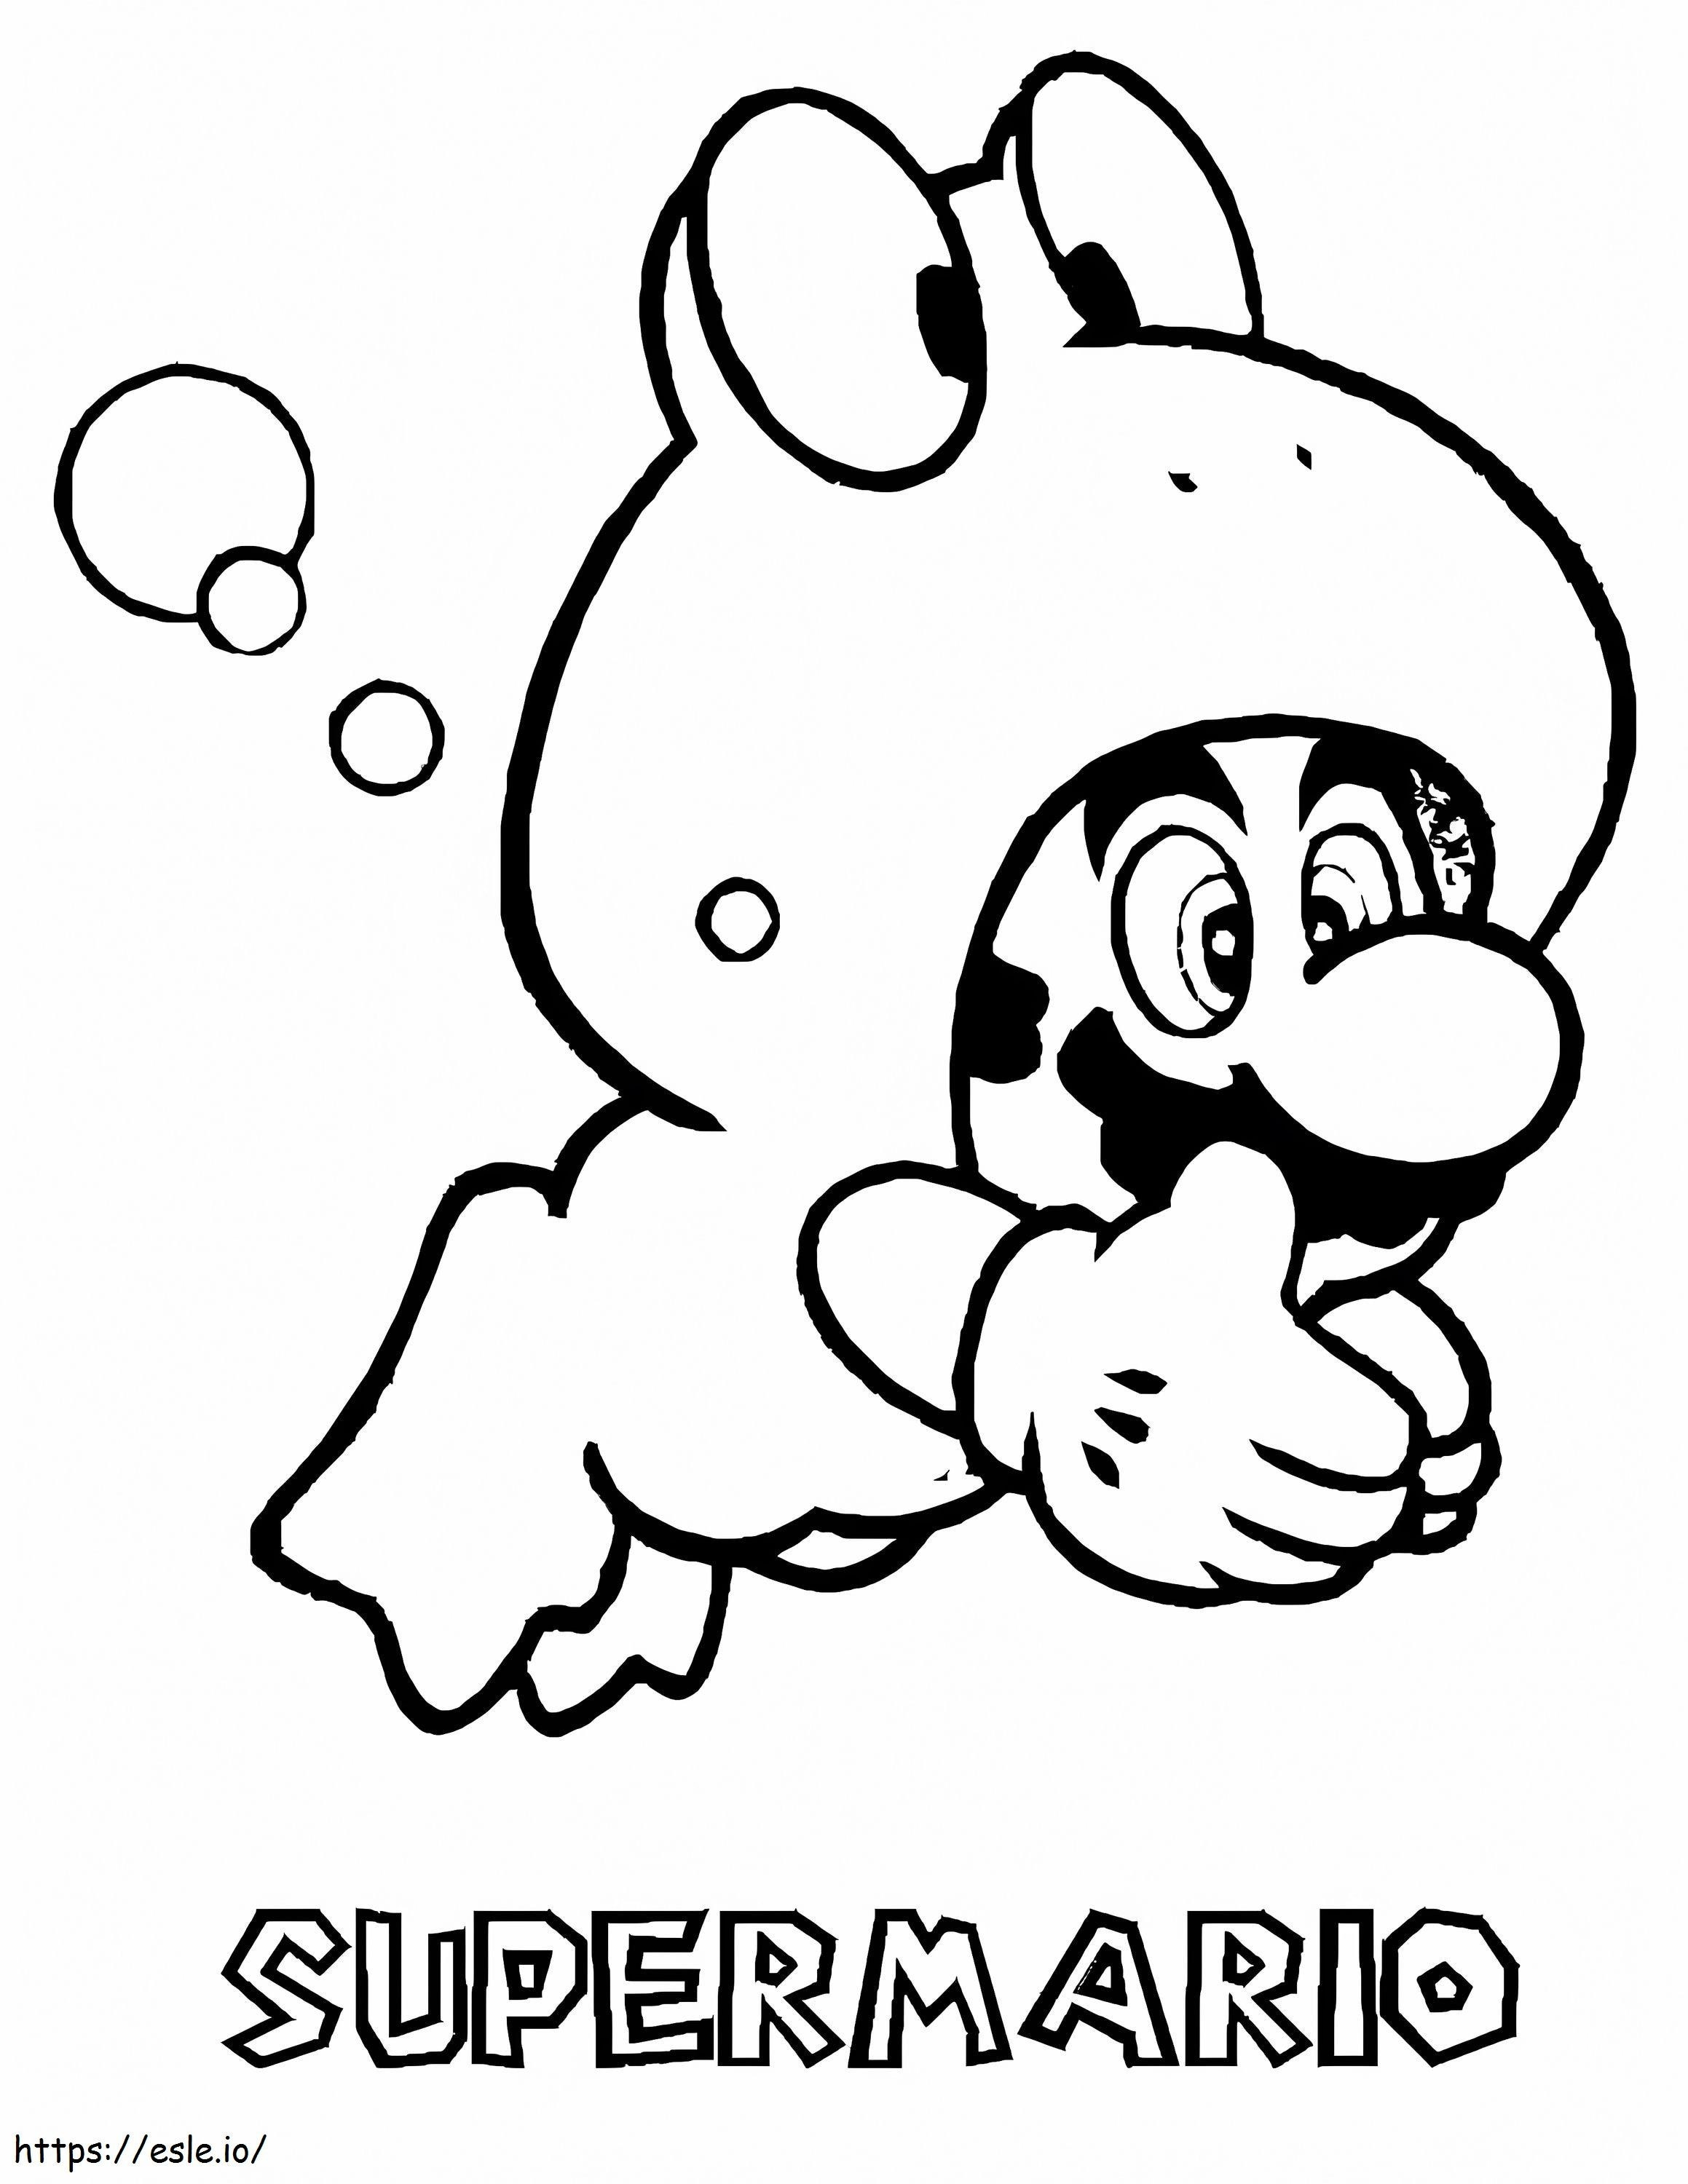 Frog Mario coloring page